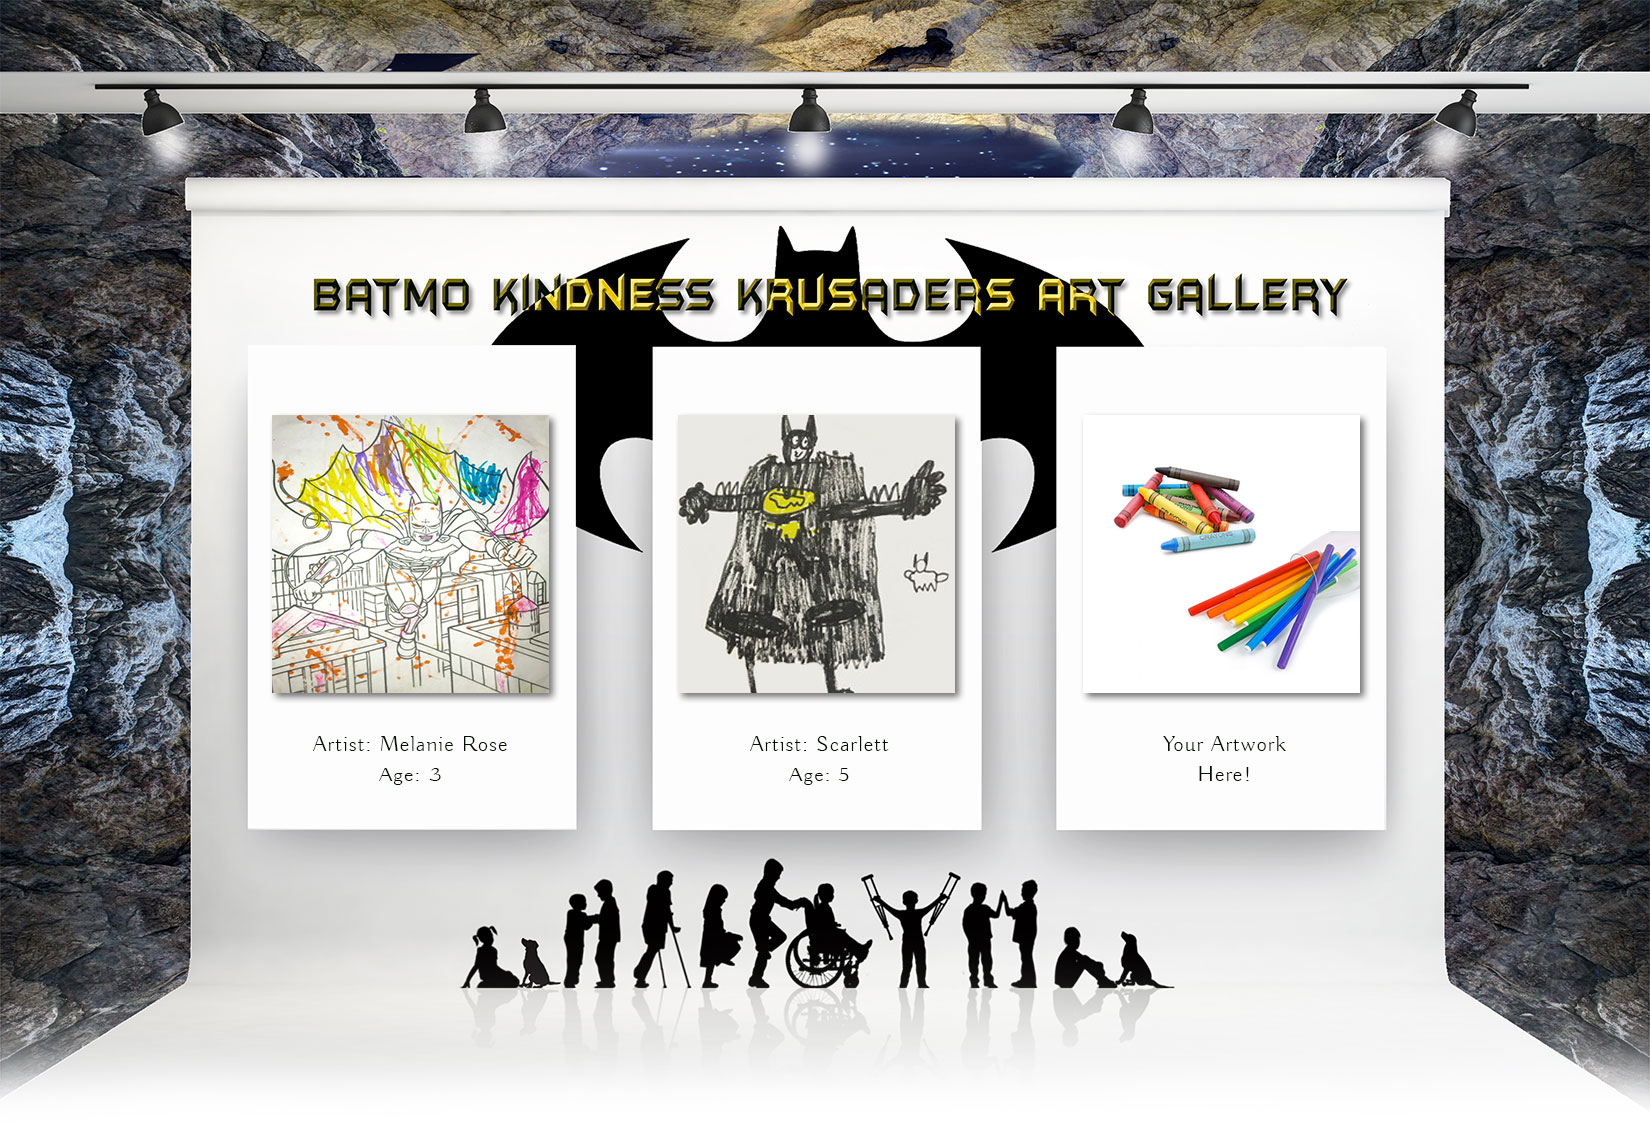 Batmo Art Gallery